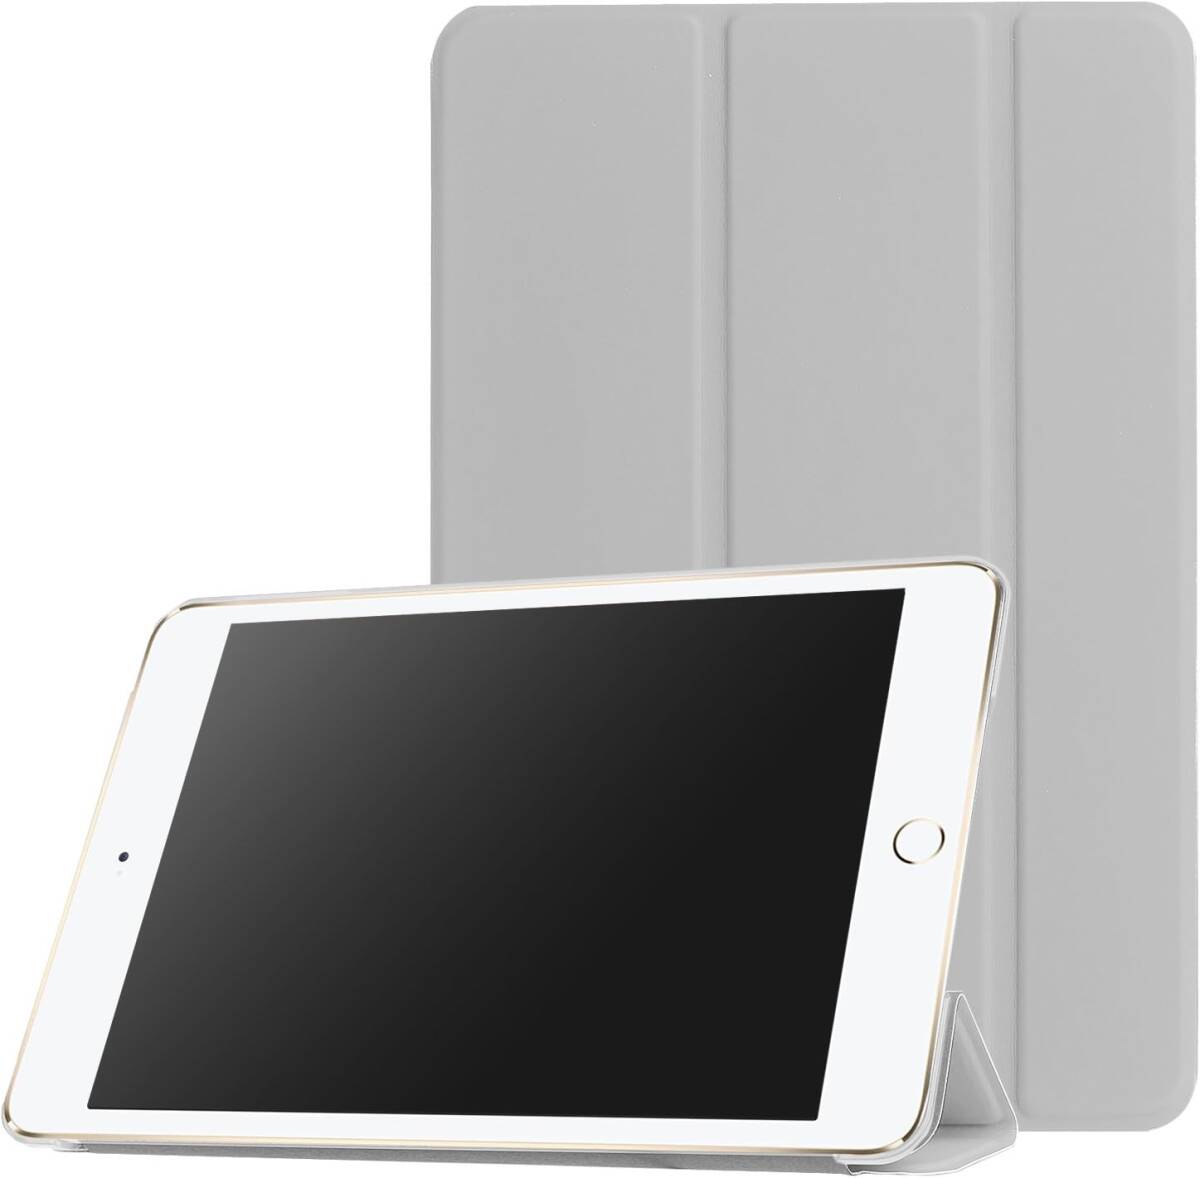 iPad mini 1/2/3 用 PU レザーカバー +ハードケース 超薄 軽量型 スタンド機能 スマートカバー ケース 三つ折 グレーの画像3